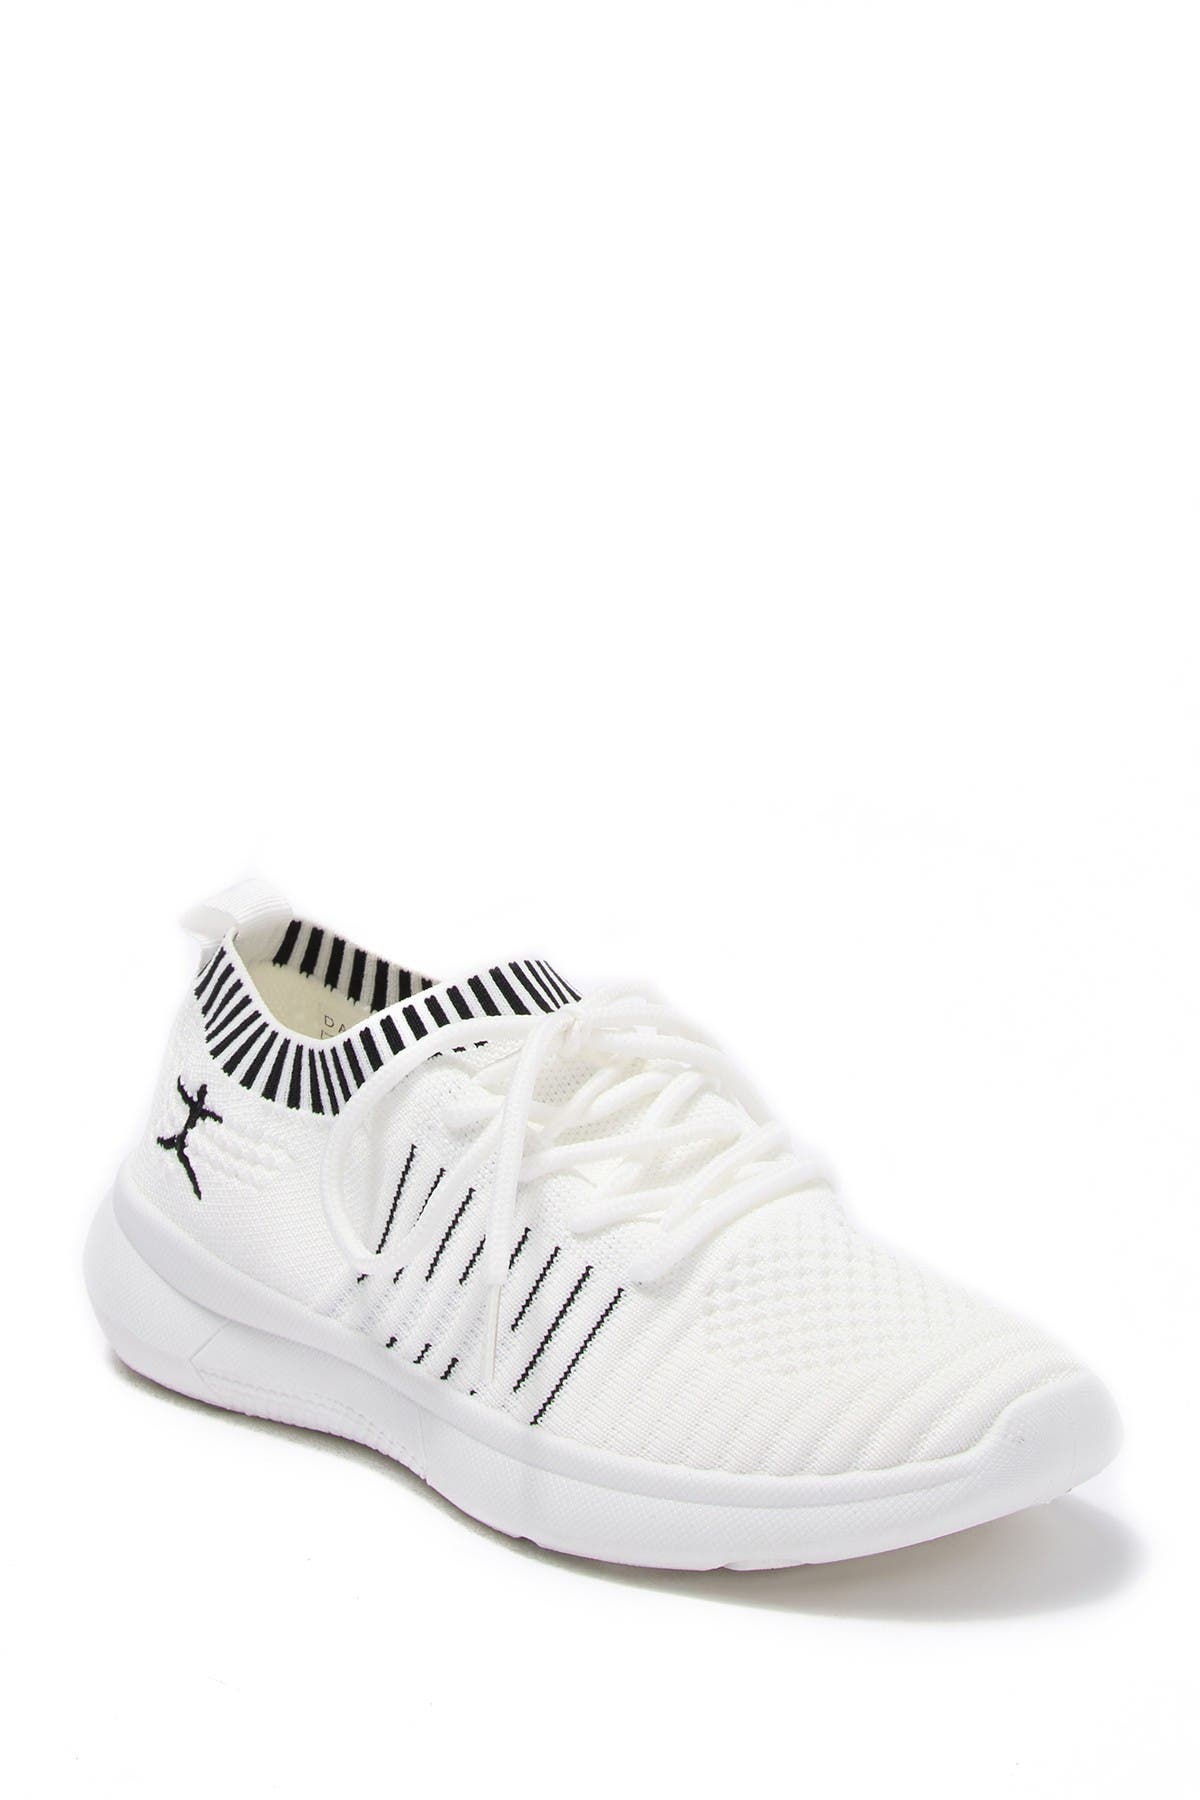 white danskin shoes